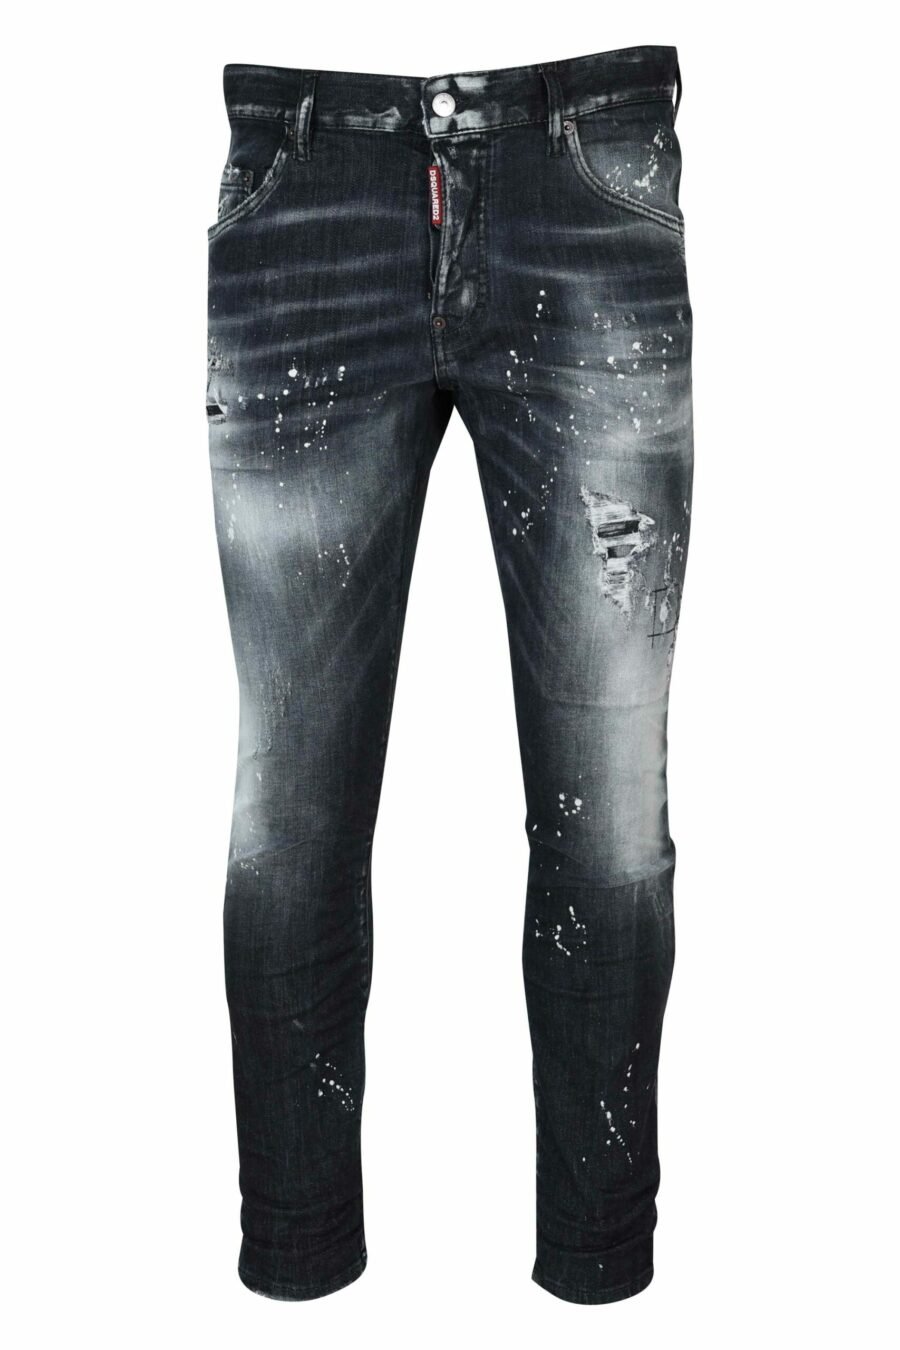 Schwarze "Skater-Jeans" mit Rissen und Zerrissenem - 8054148474126 skaliert